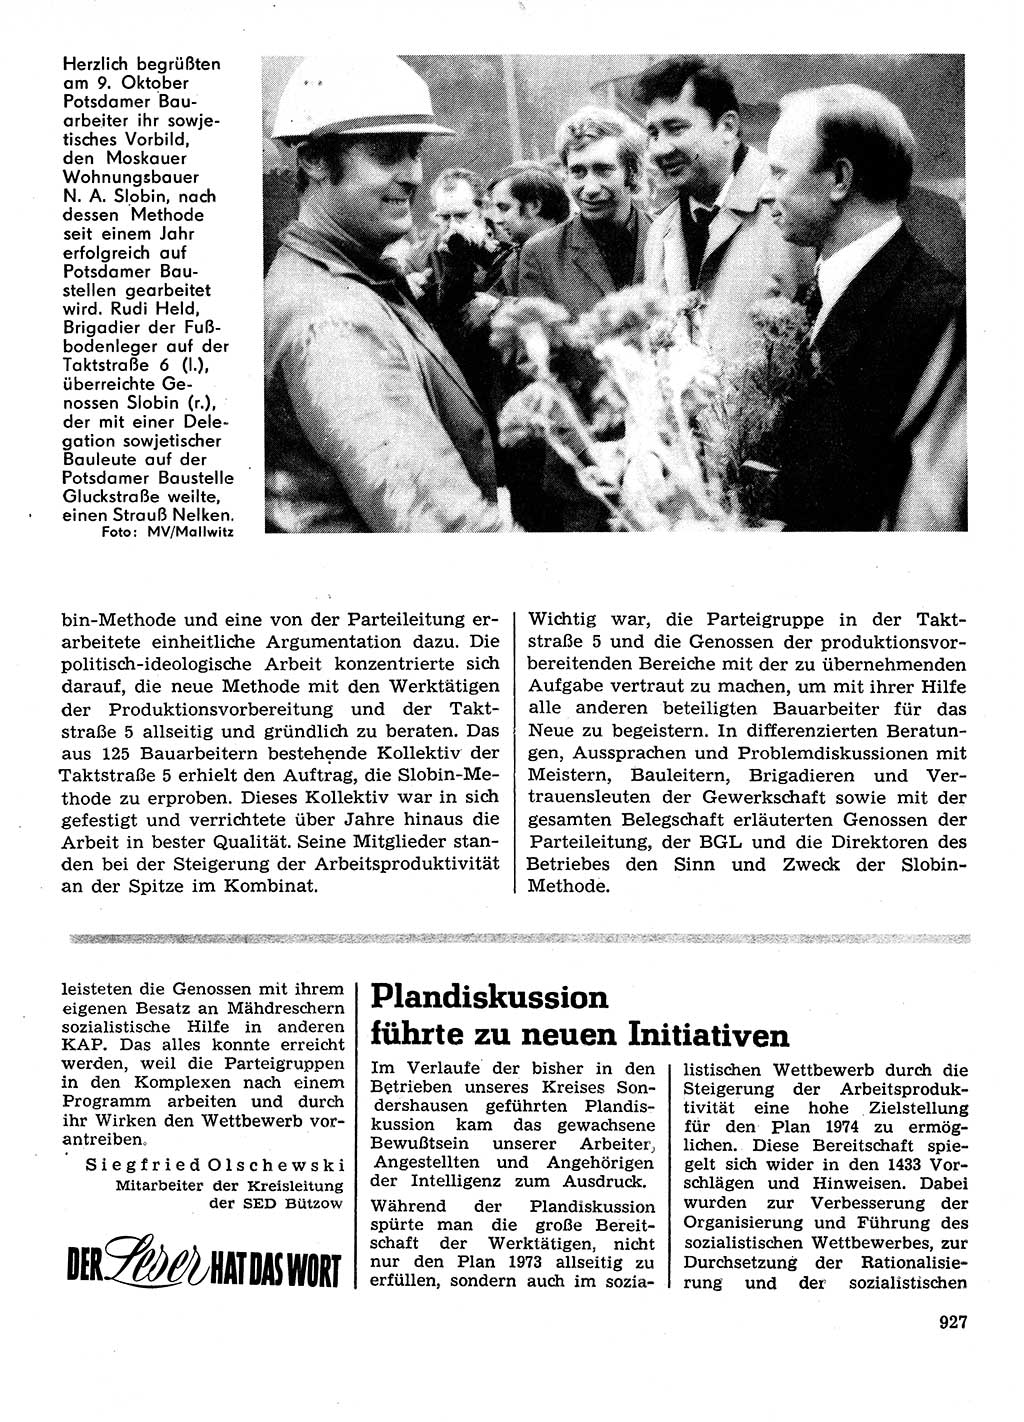 Neuer Weg (NW), Organ des Zentralkomitees (ZK) der SED (Sozialistische Einheitspartei Deutschlands) für Fragen des Parteilebens, 28. Jahrgang [Deutsche Demokratische Republik (DDR)] 1973, Seite 927 (NW ZK SED DDR 1973, S. 927)